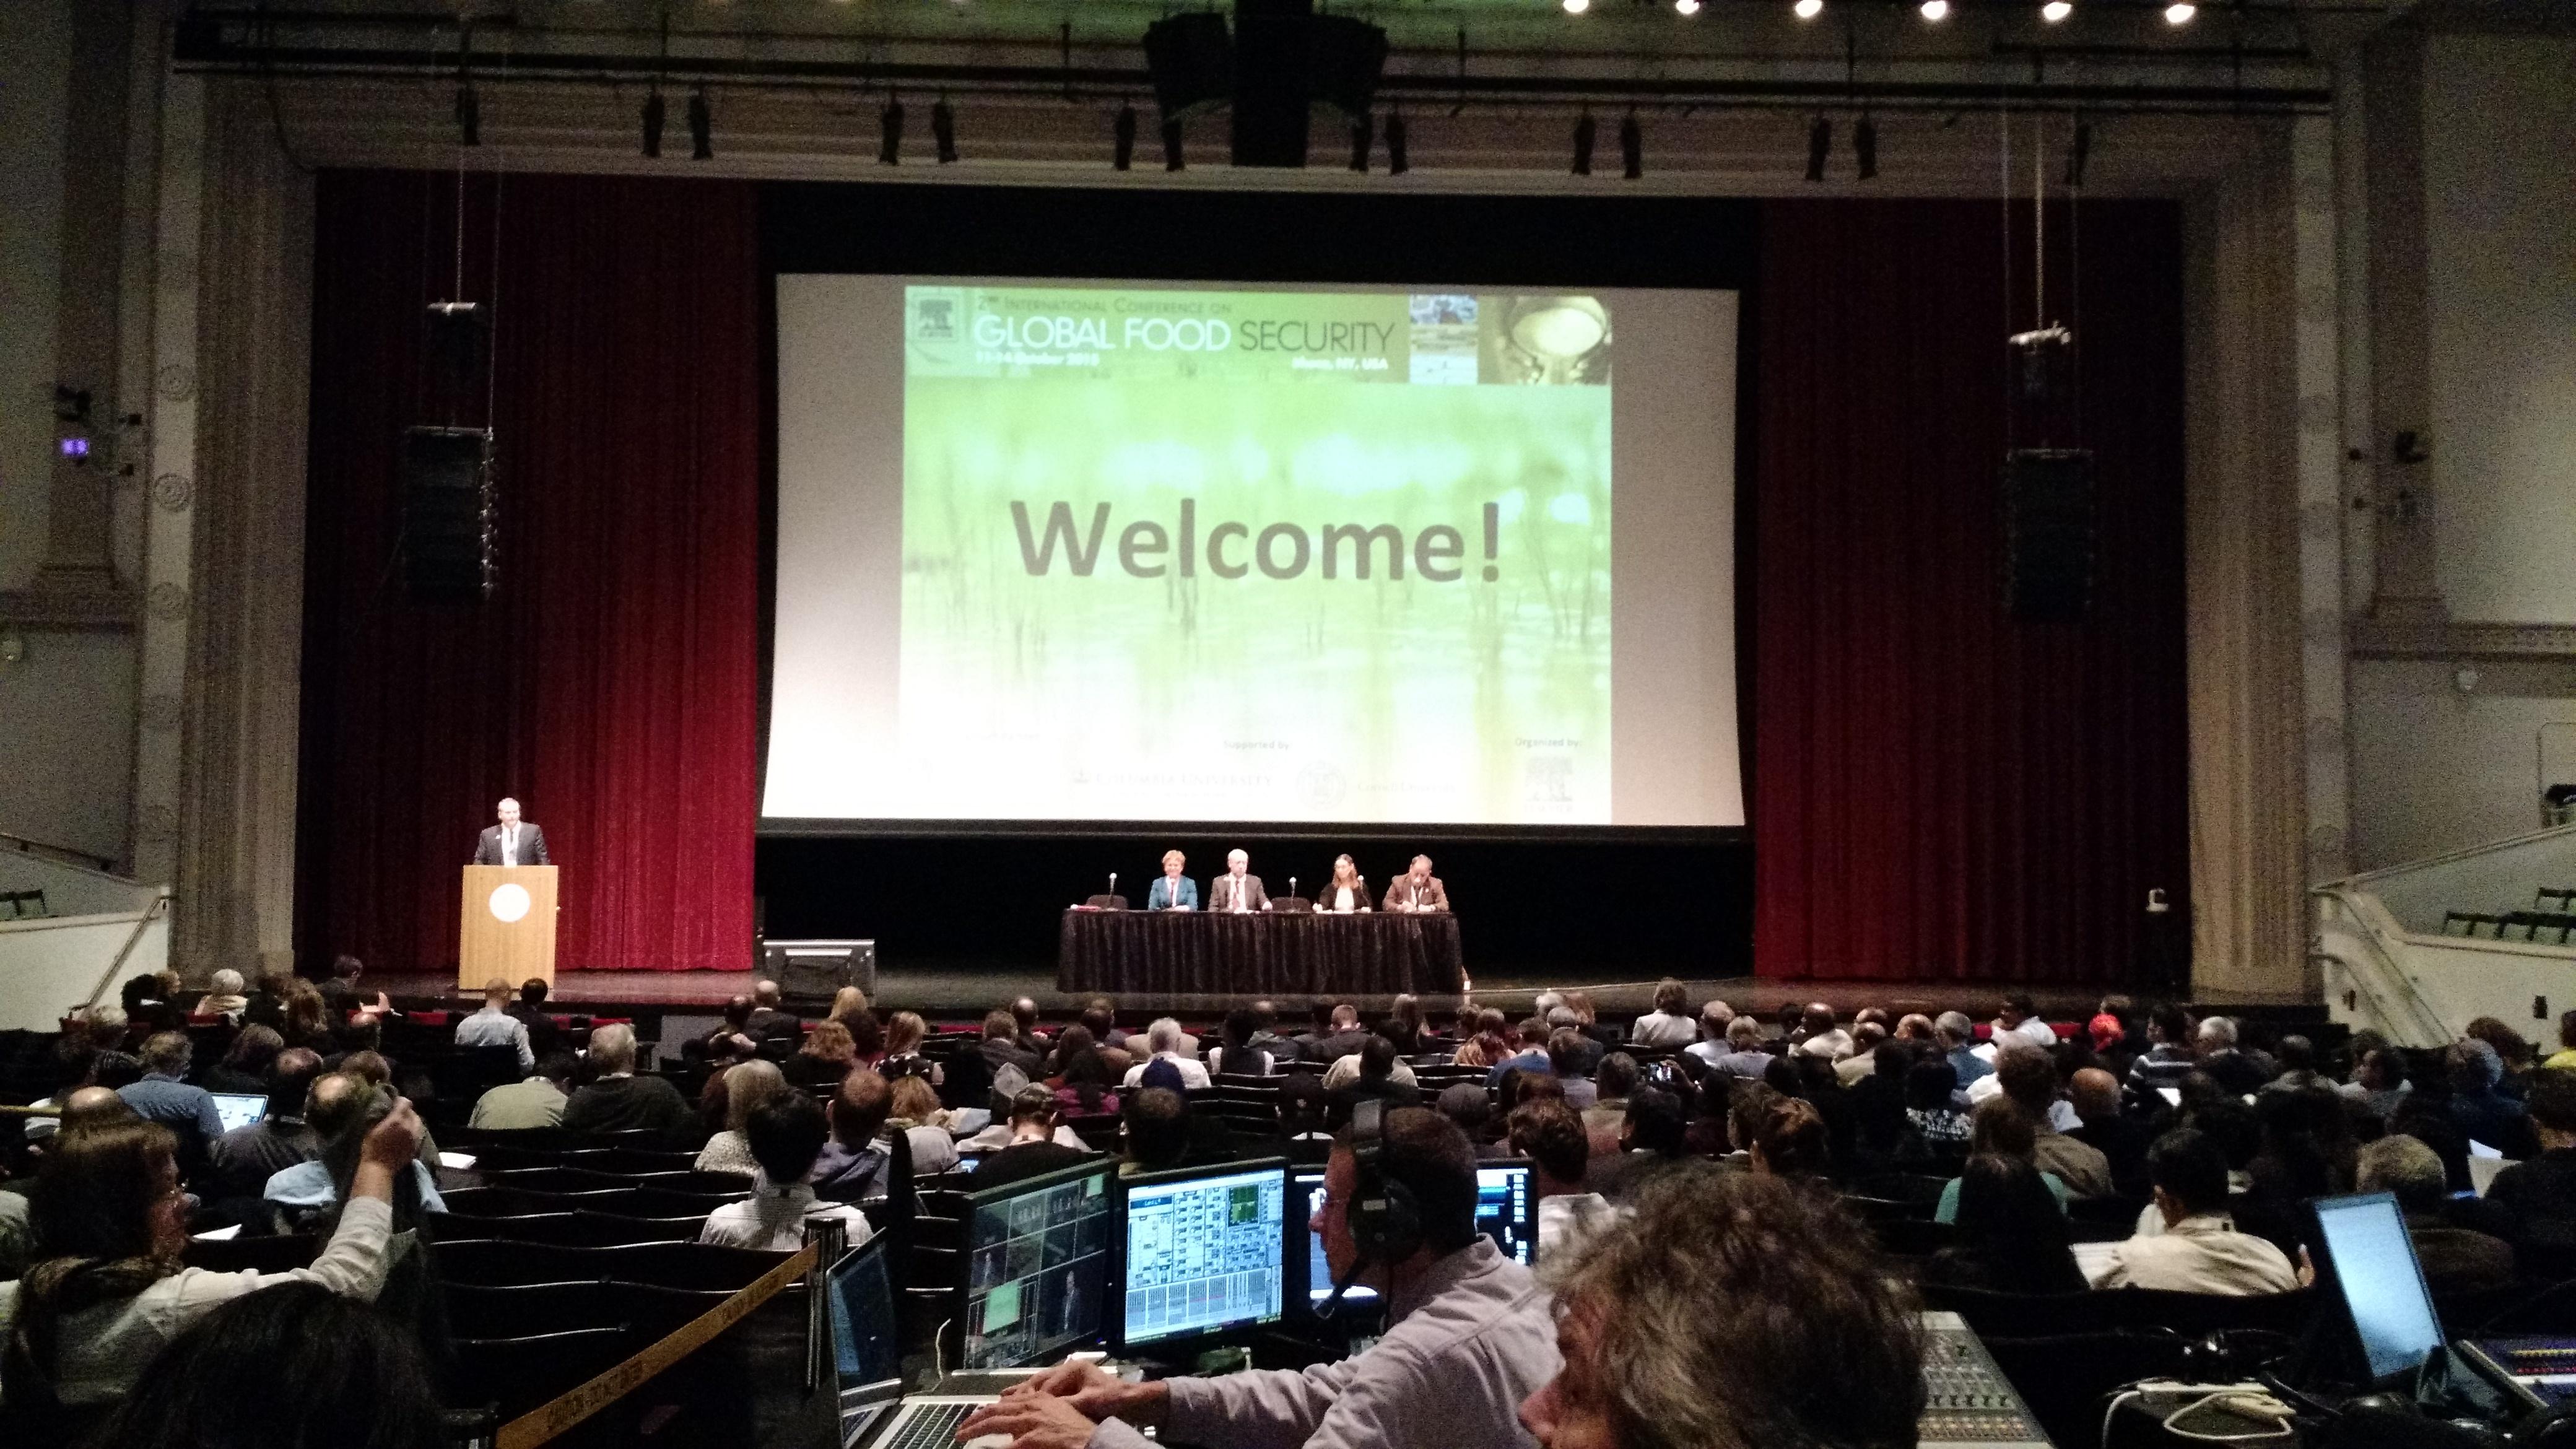 Sesión plenaria inaugural de la II Global Food Security Conference, Ithaca-EE.UU.